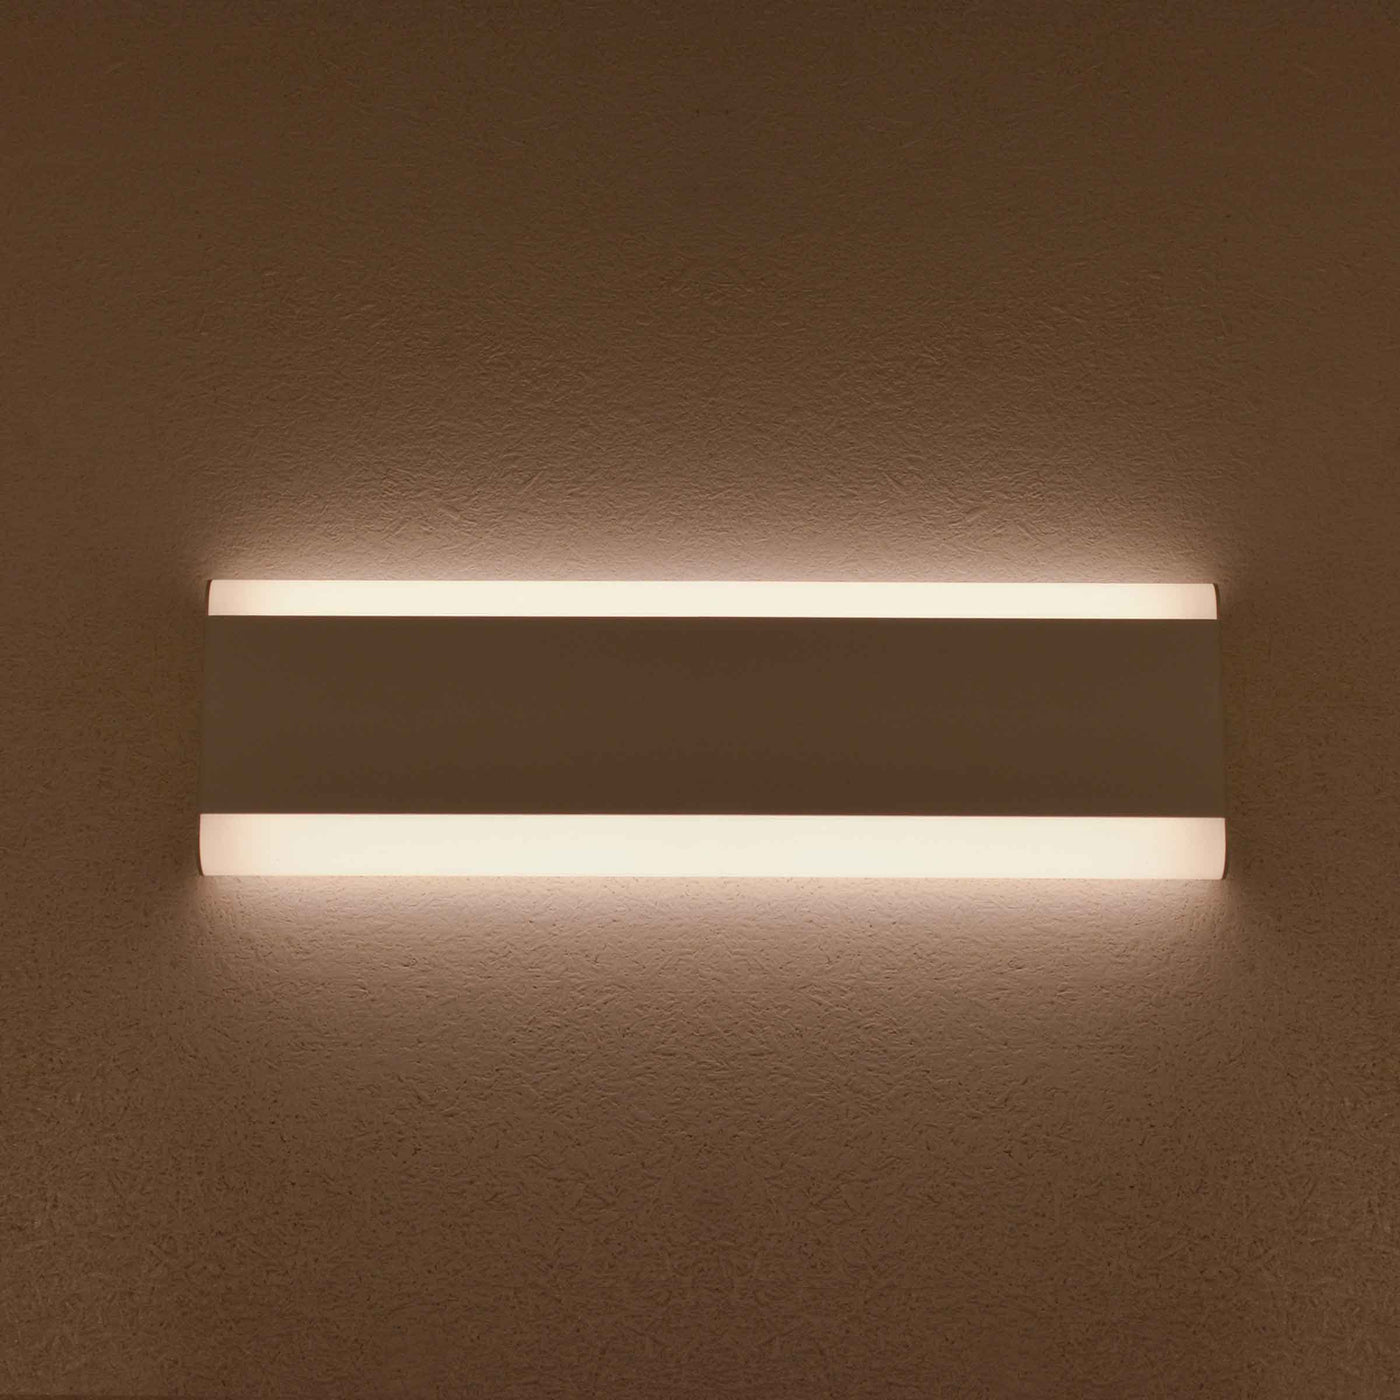 Aluminium Wall Lamp LINES by Hi.Project for Brillamenti 06